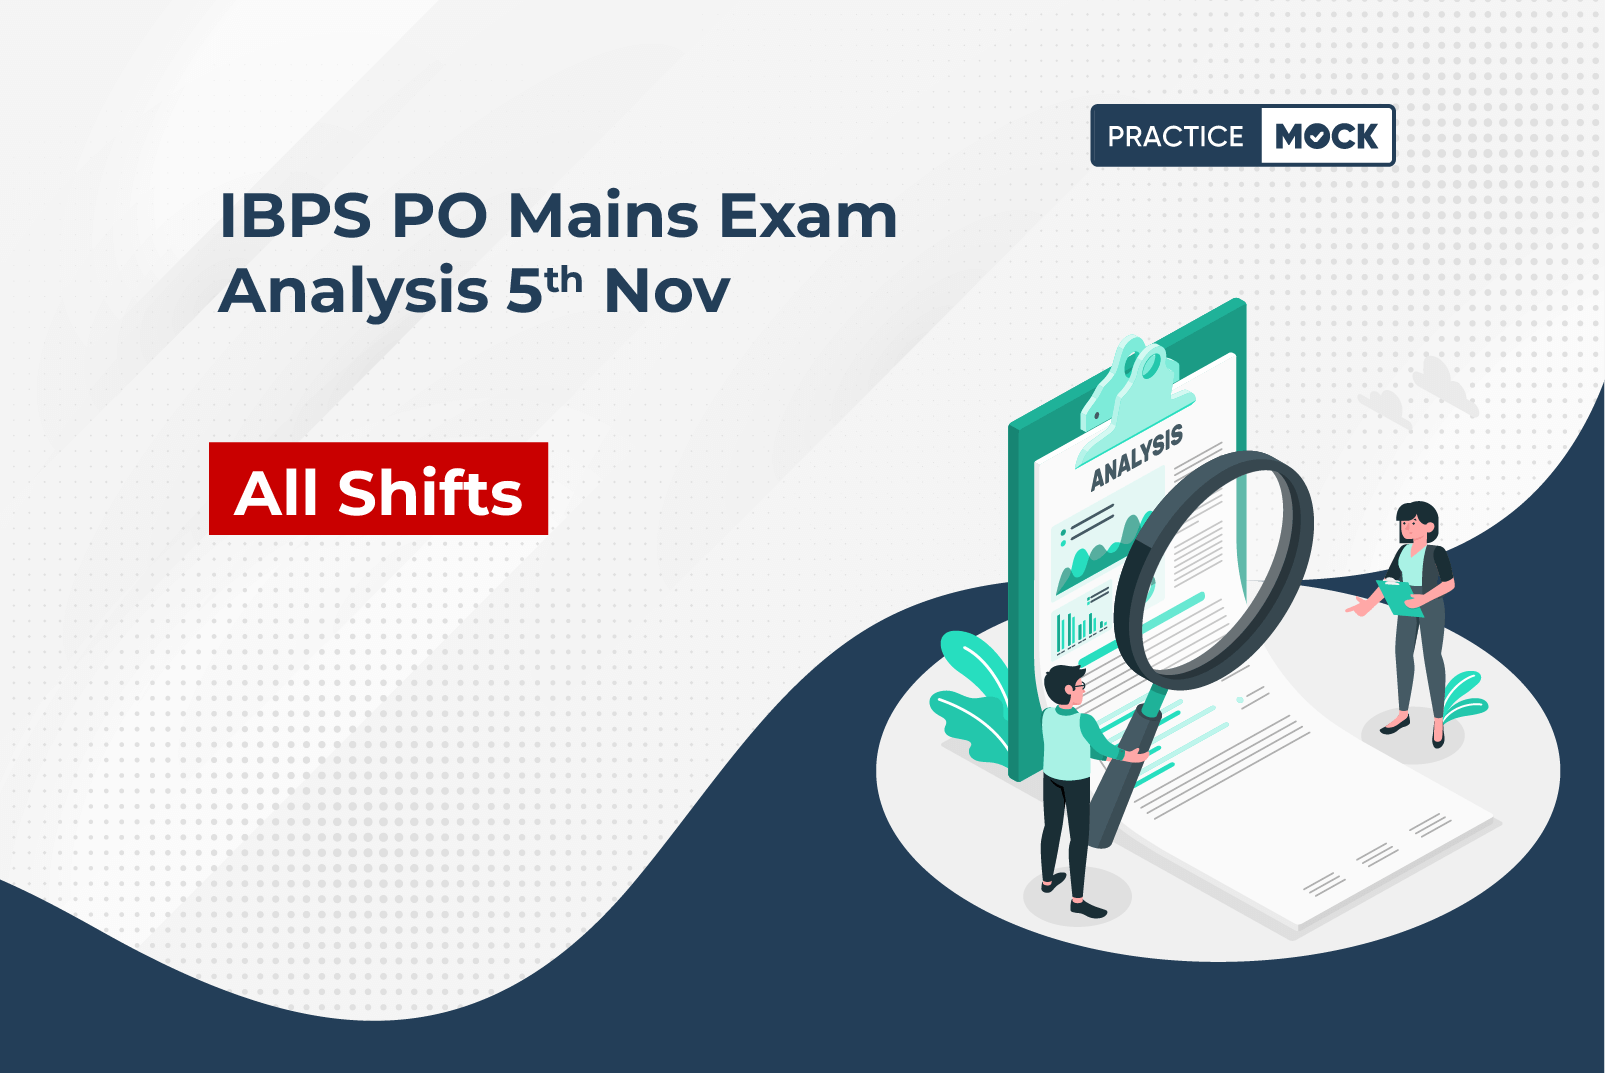 IBPS PO Mains Exam Analysis 5th Nov - All Shifts